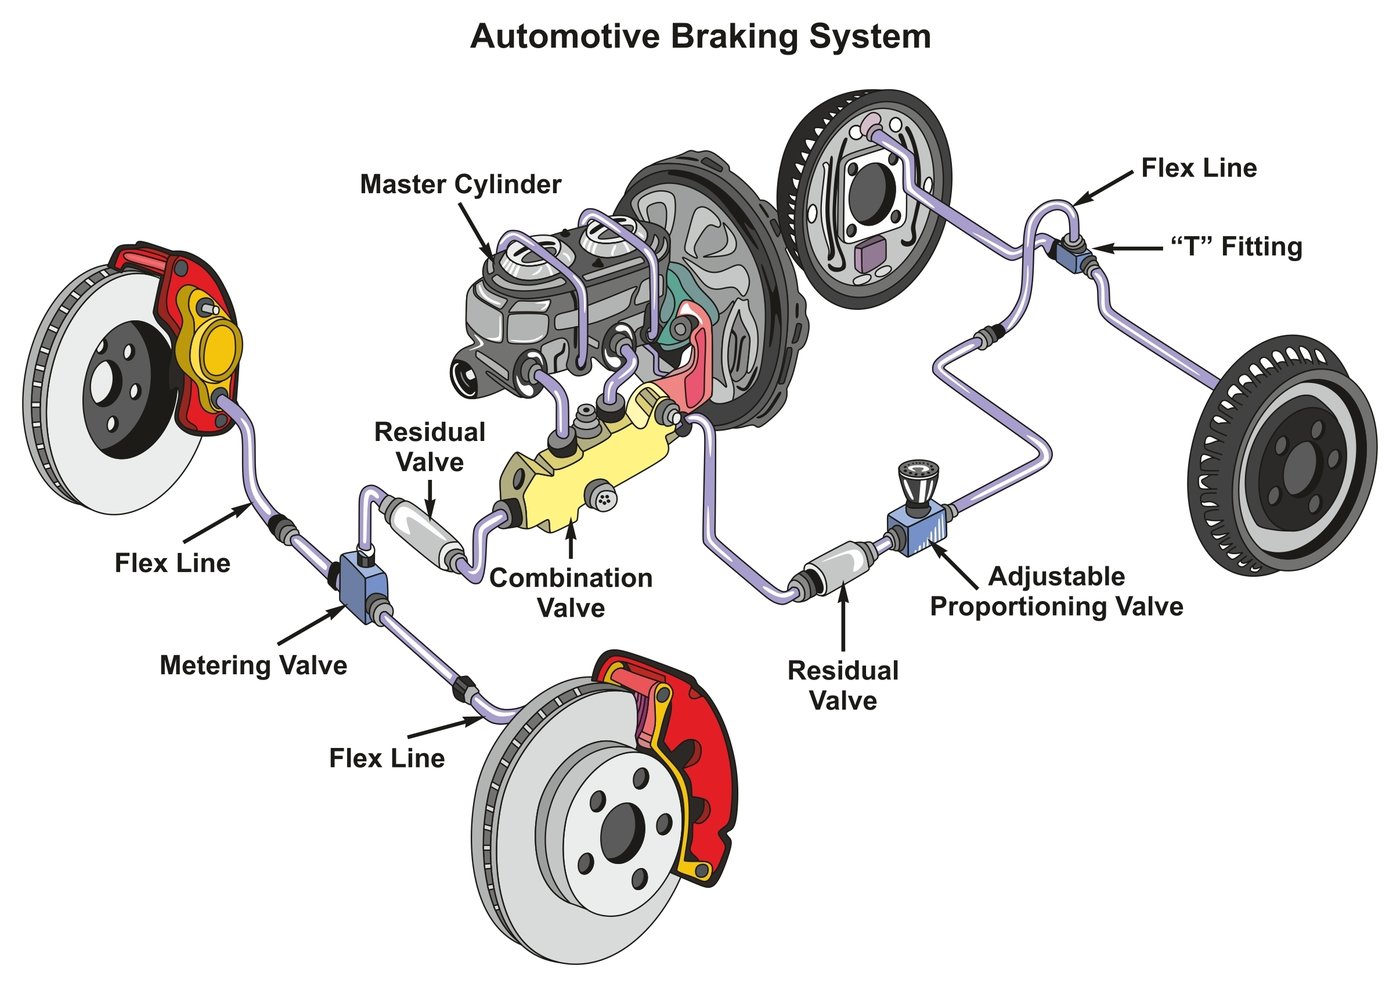 Aufbau einer modernen Pkw-Bremsanlage - Fahrzeugtechnik